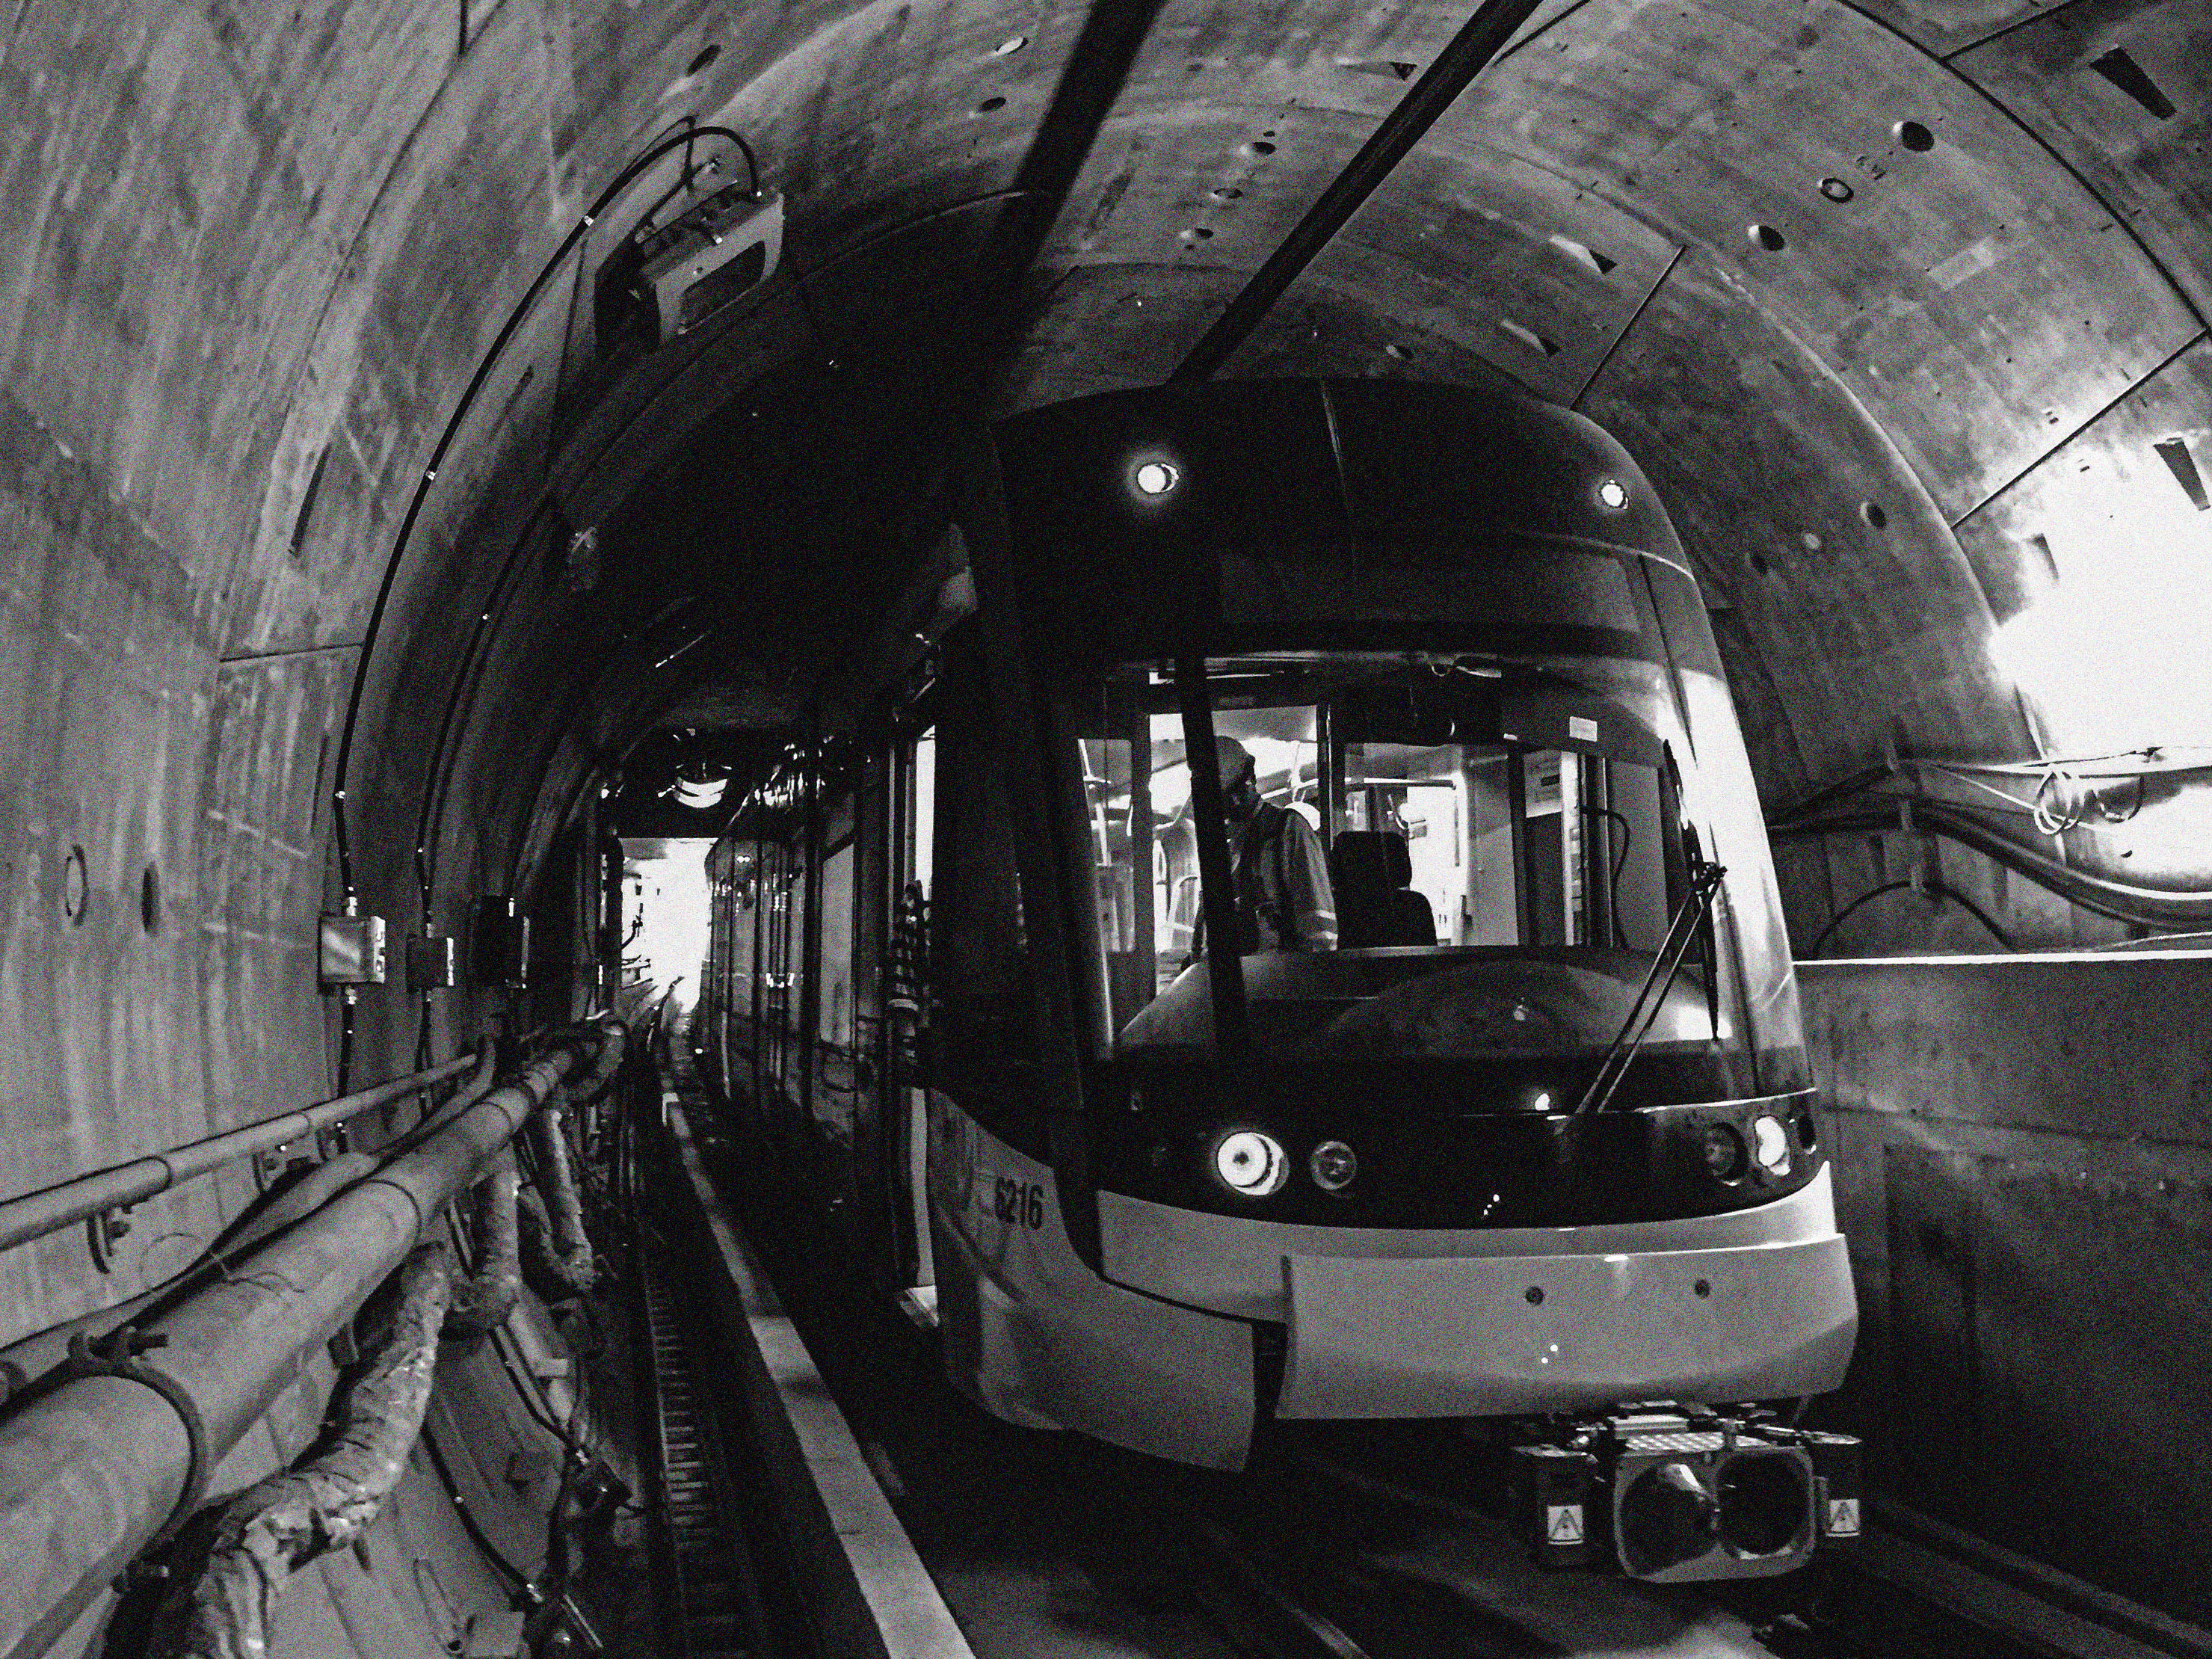 An LRV waits inside a tunnel.